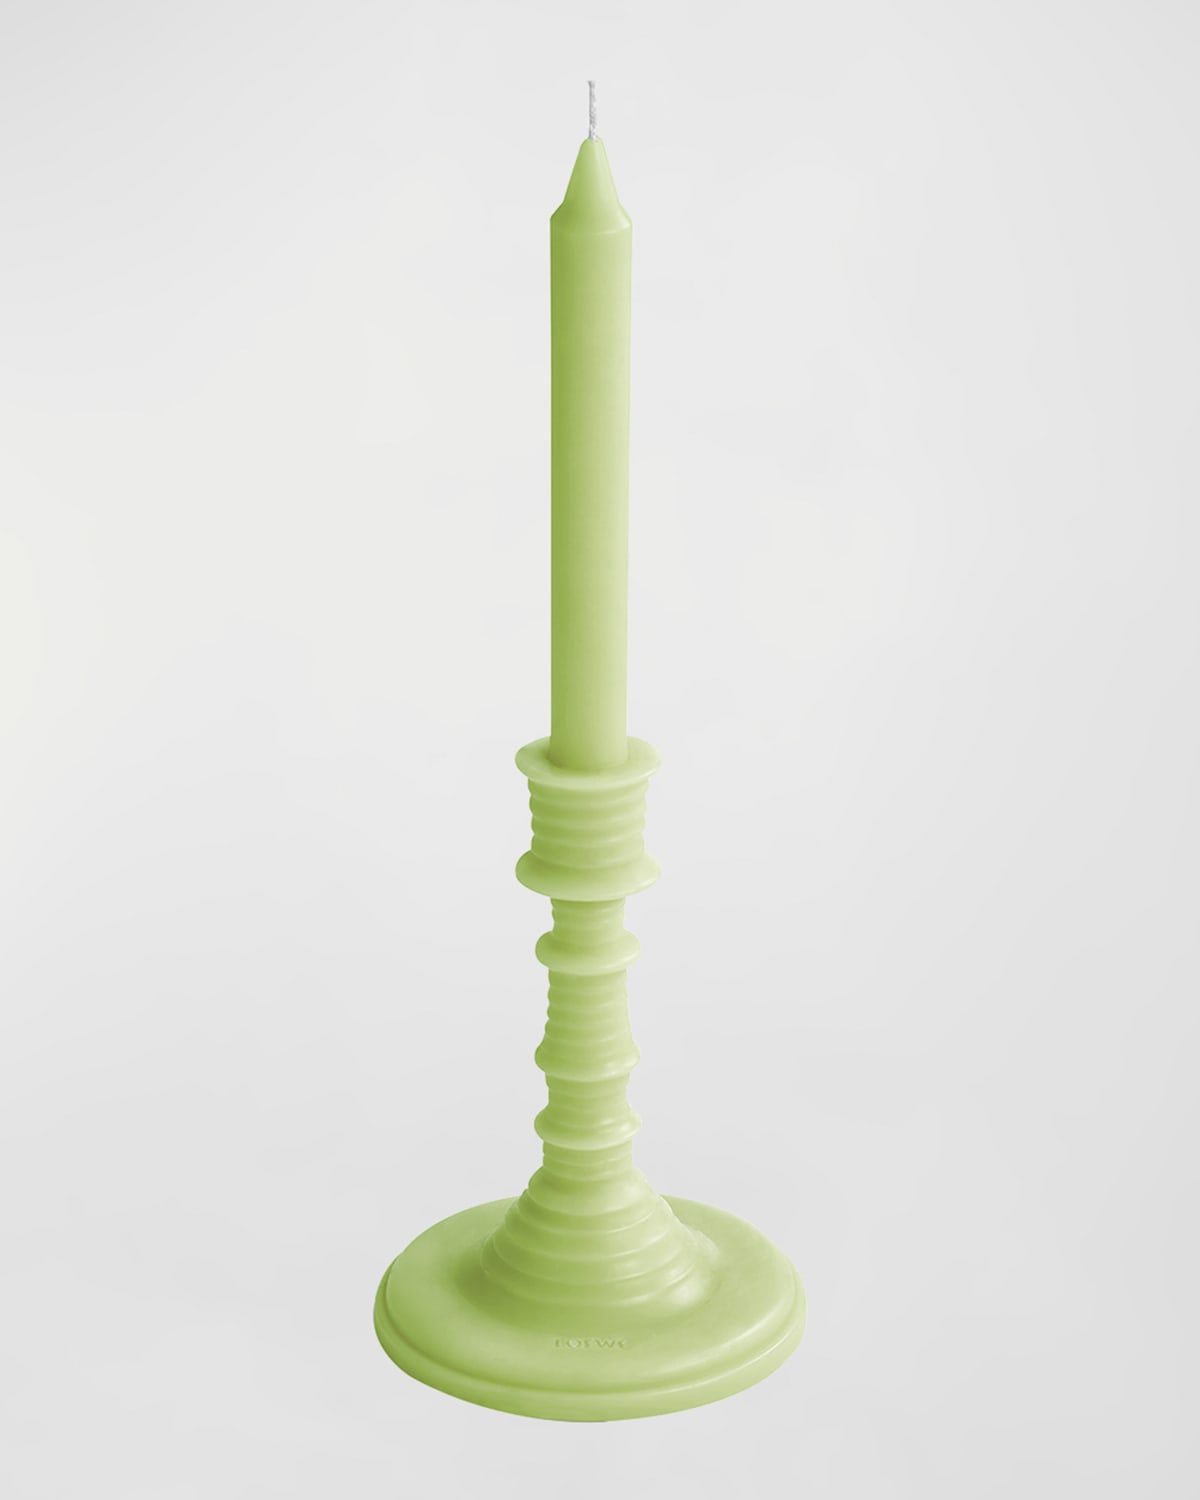 Loewe Cucumber Candleholder Shaped Candle, 11.9 Oz.